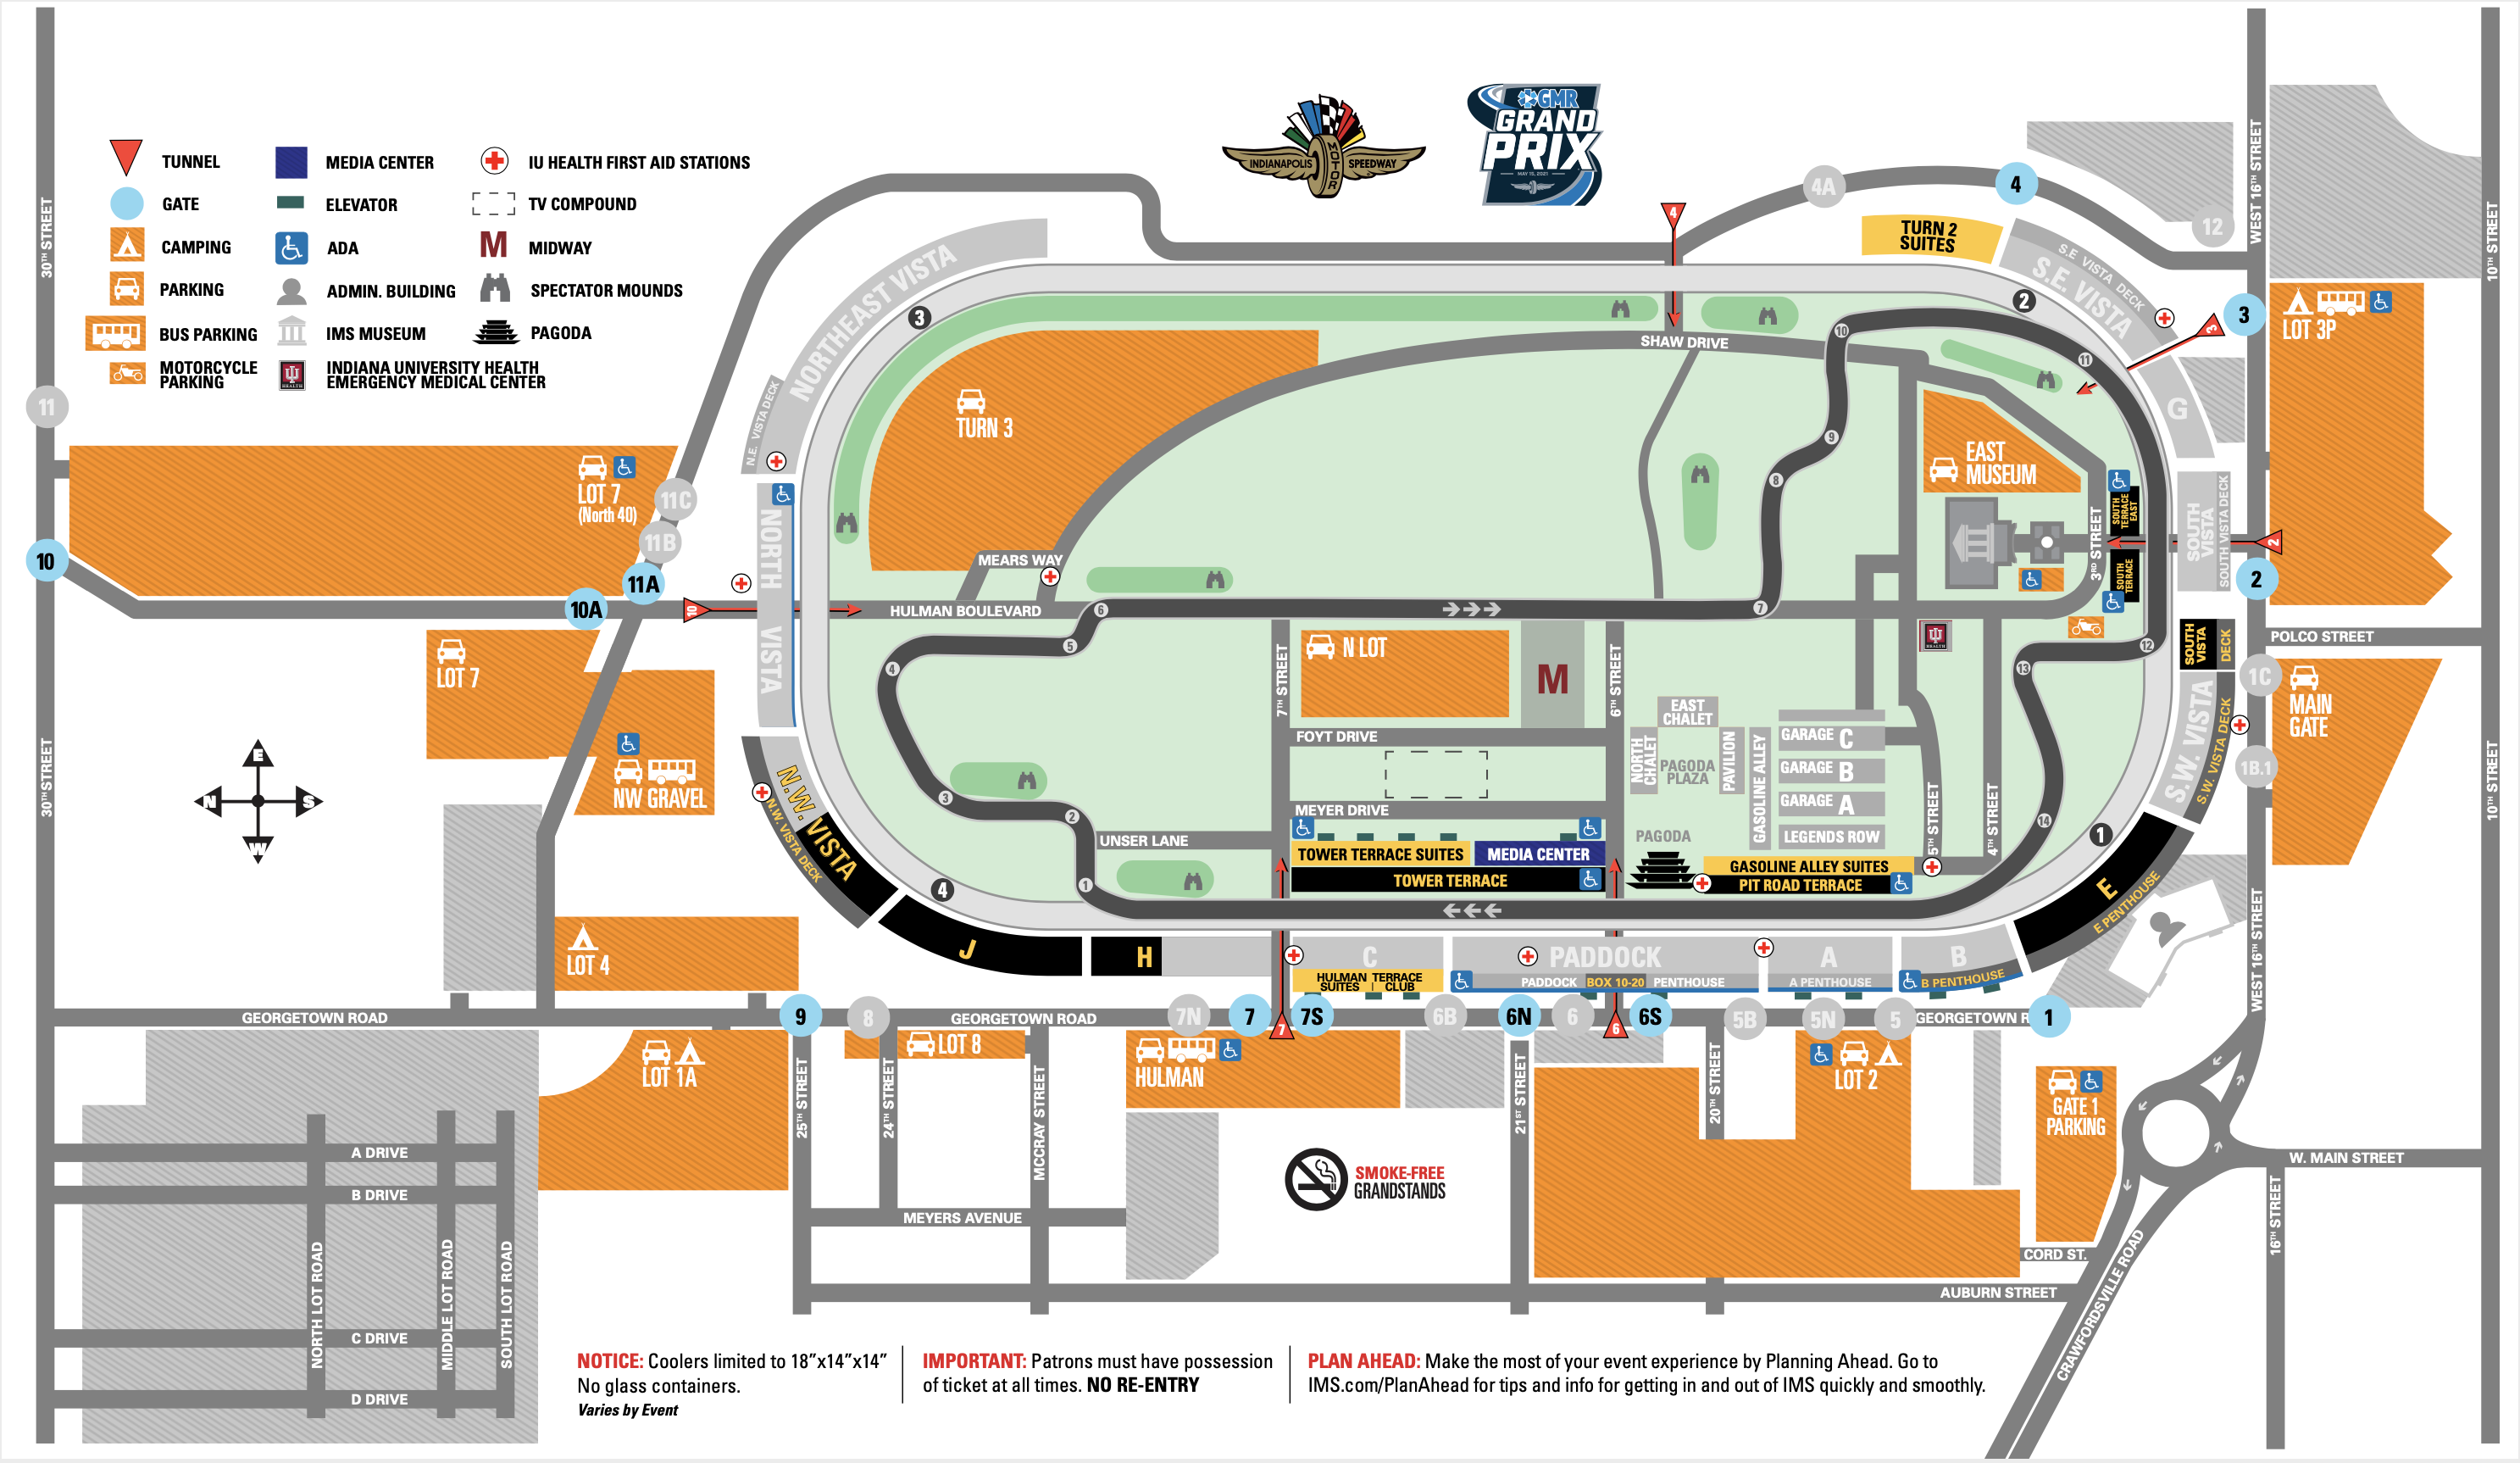 GMR Grand Prix Parking Information